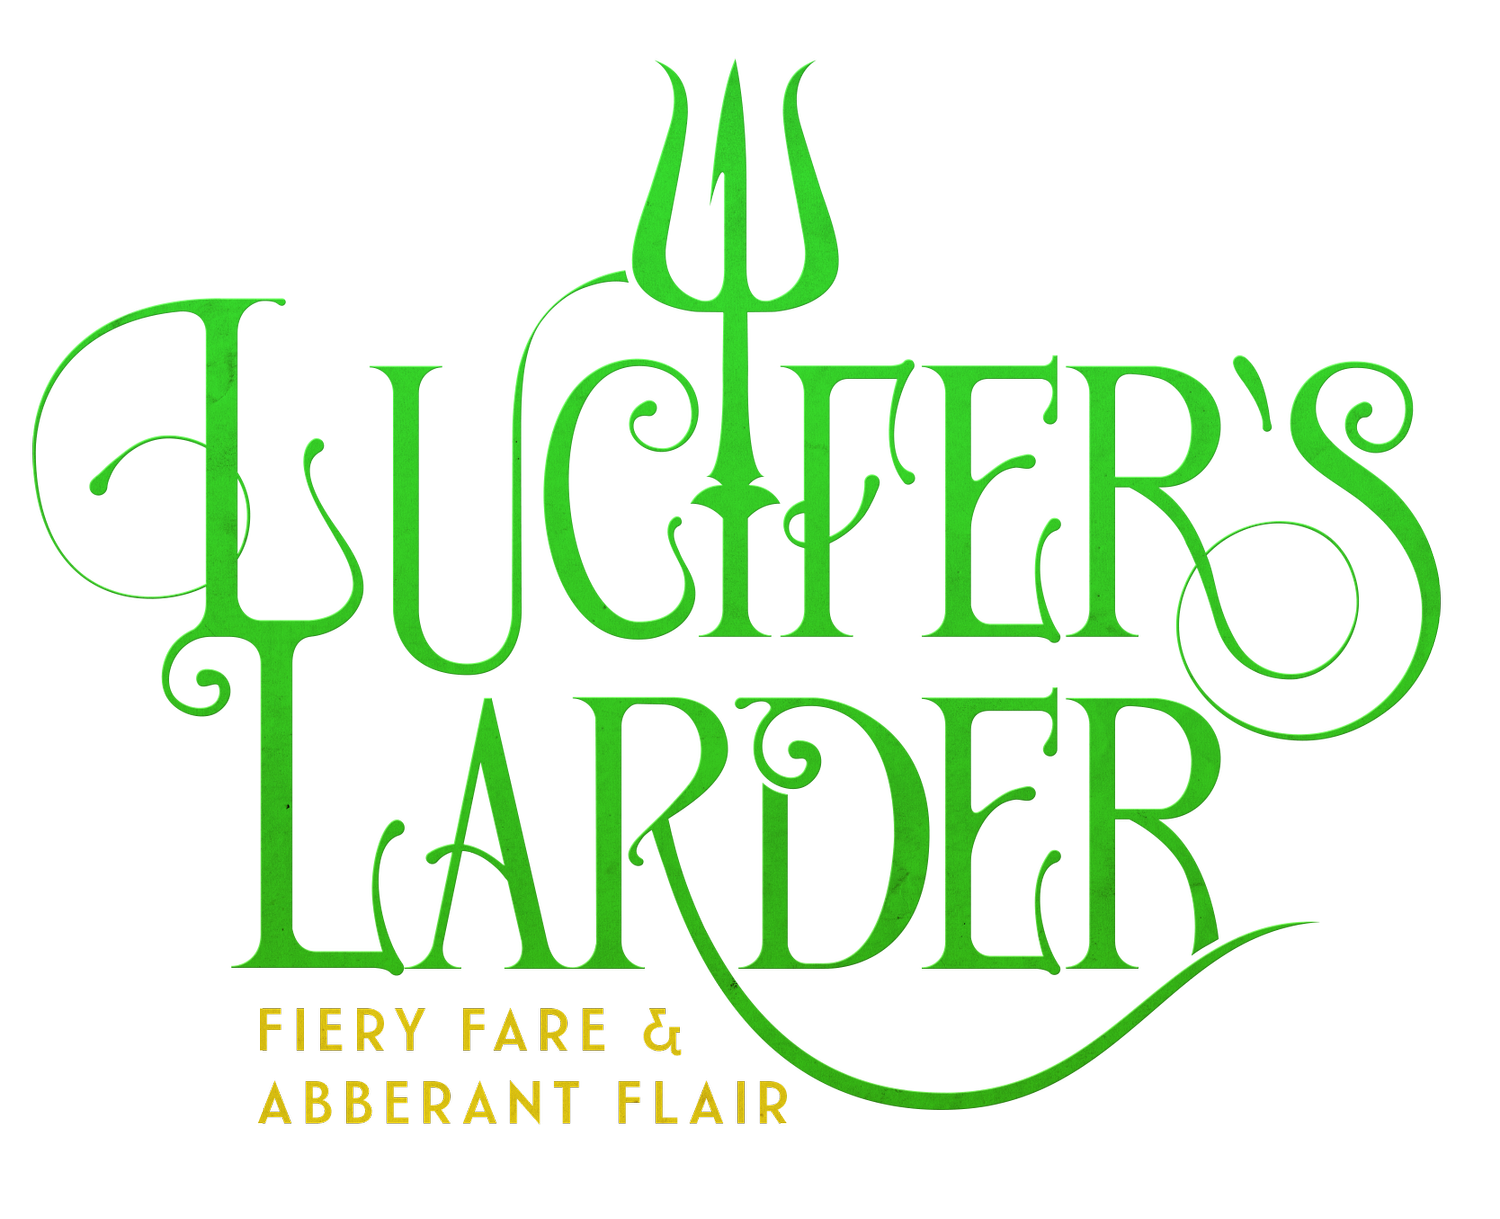 Lucifer's Larder